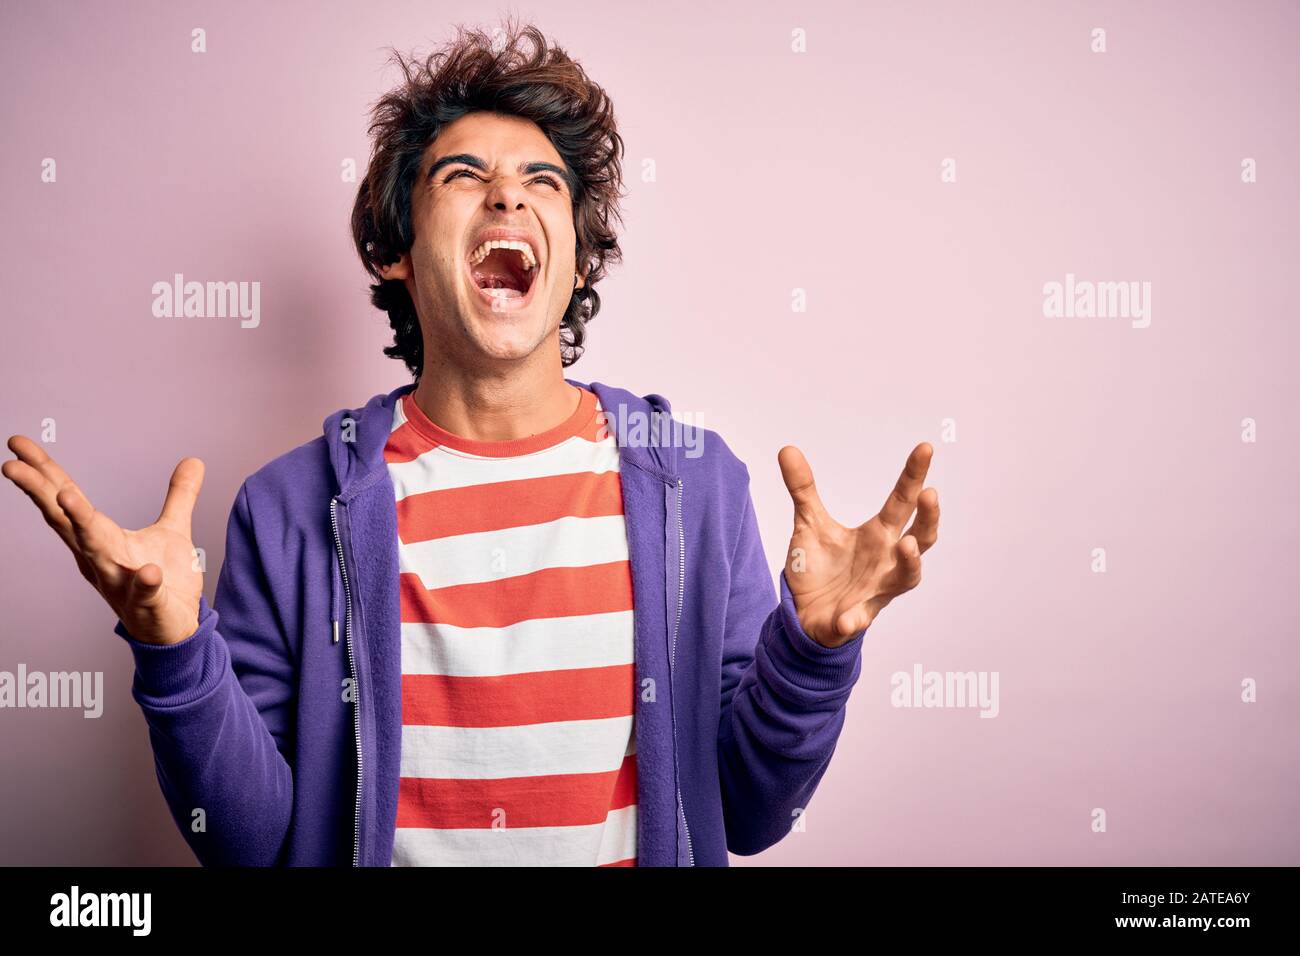 Jeune homme portant un t-shirt rayé et un sueur pourpre sur fond rose isolé folle et folle crier et hurler avec l'expression agressive et Banque D'Images